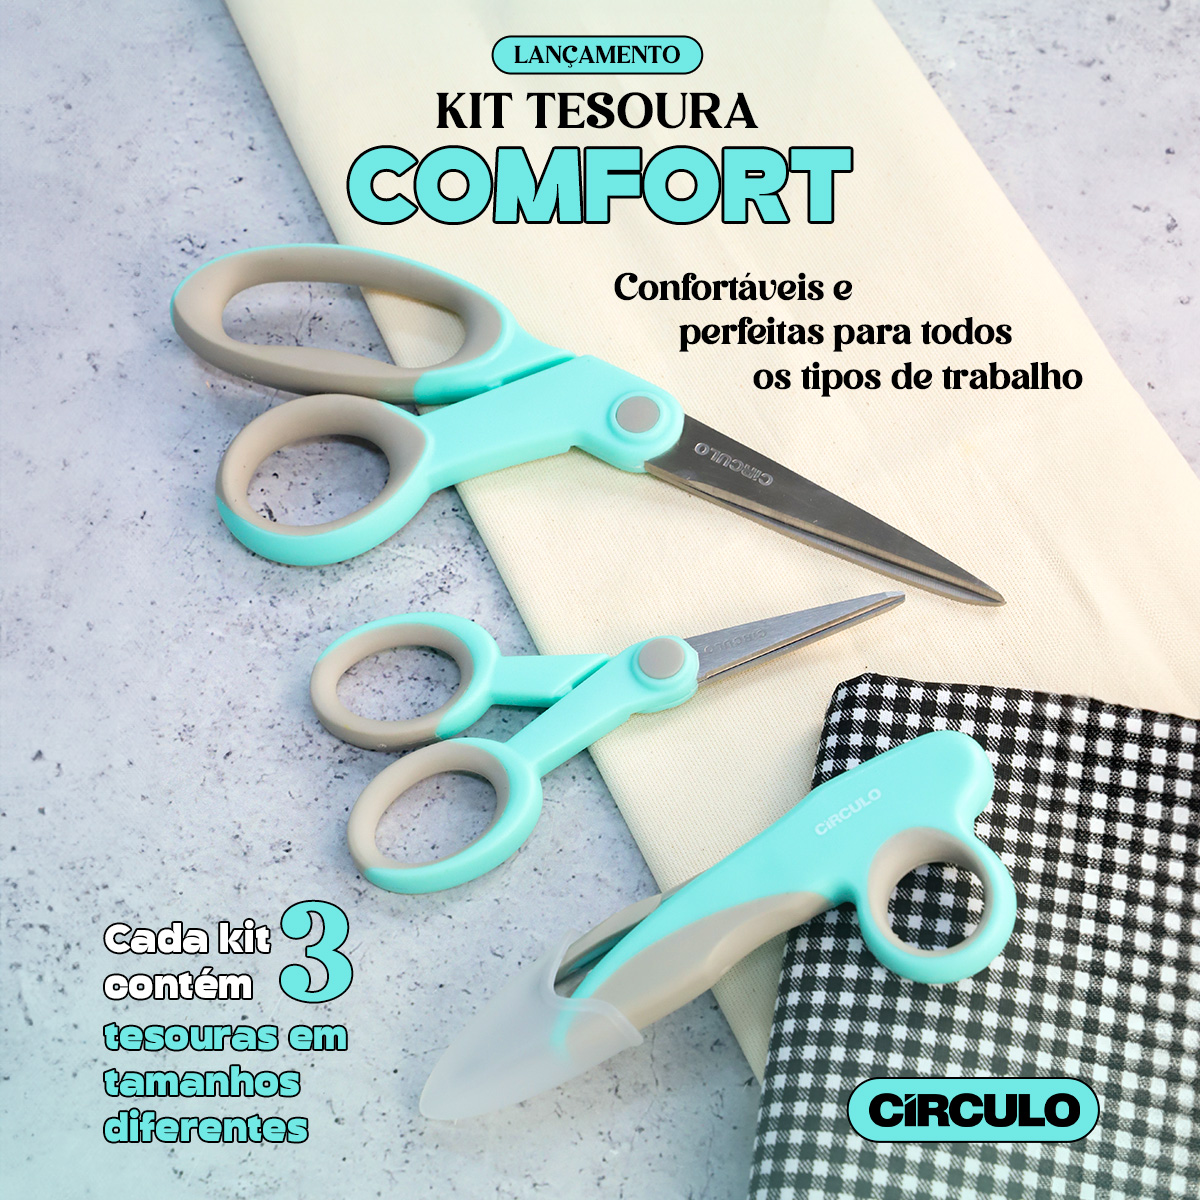 Lançamento: Kit Tesoura Comfort!